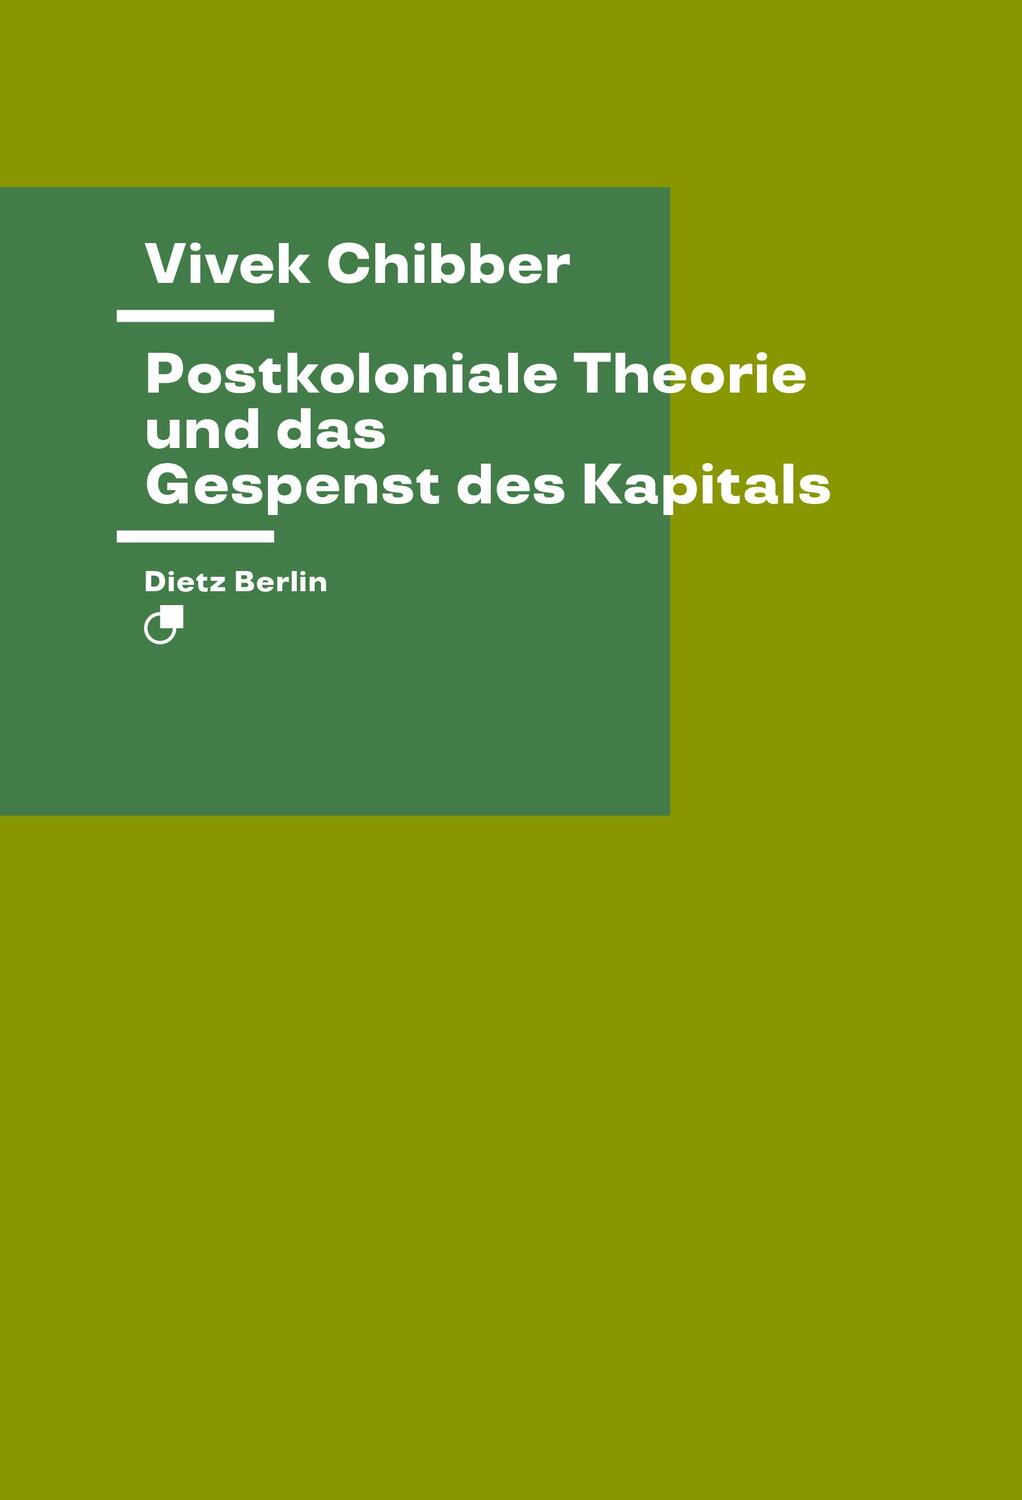 Postkoloniale Theorie und das Gespenst des Kapitals - Chibber, Vivek